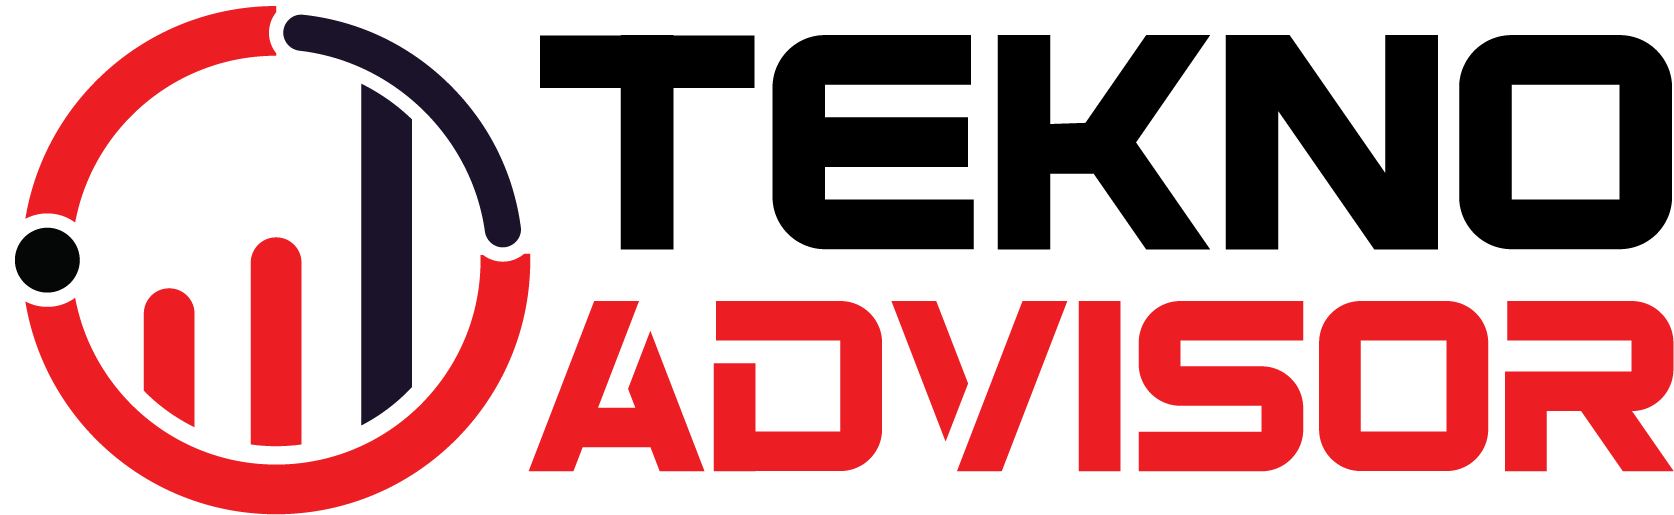 Tekno Advisor | Teknologi, Hosting, Keuangan, Trading dan Forex